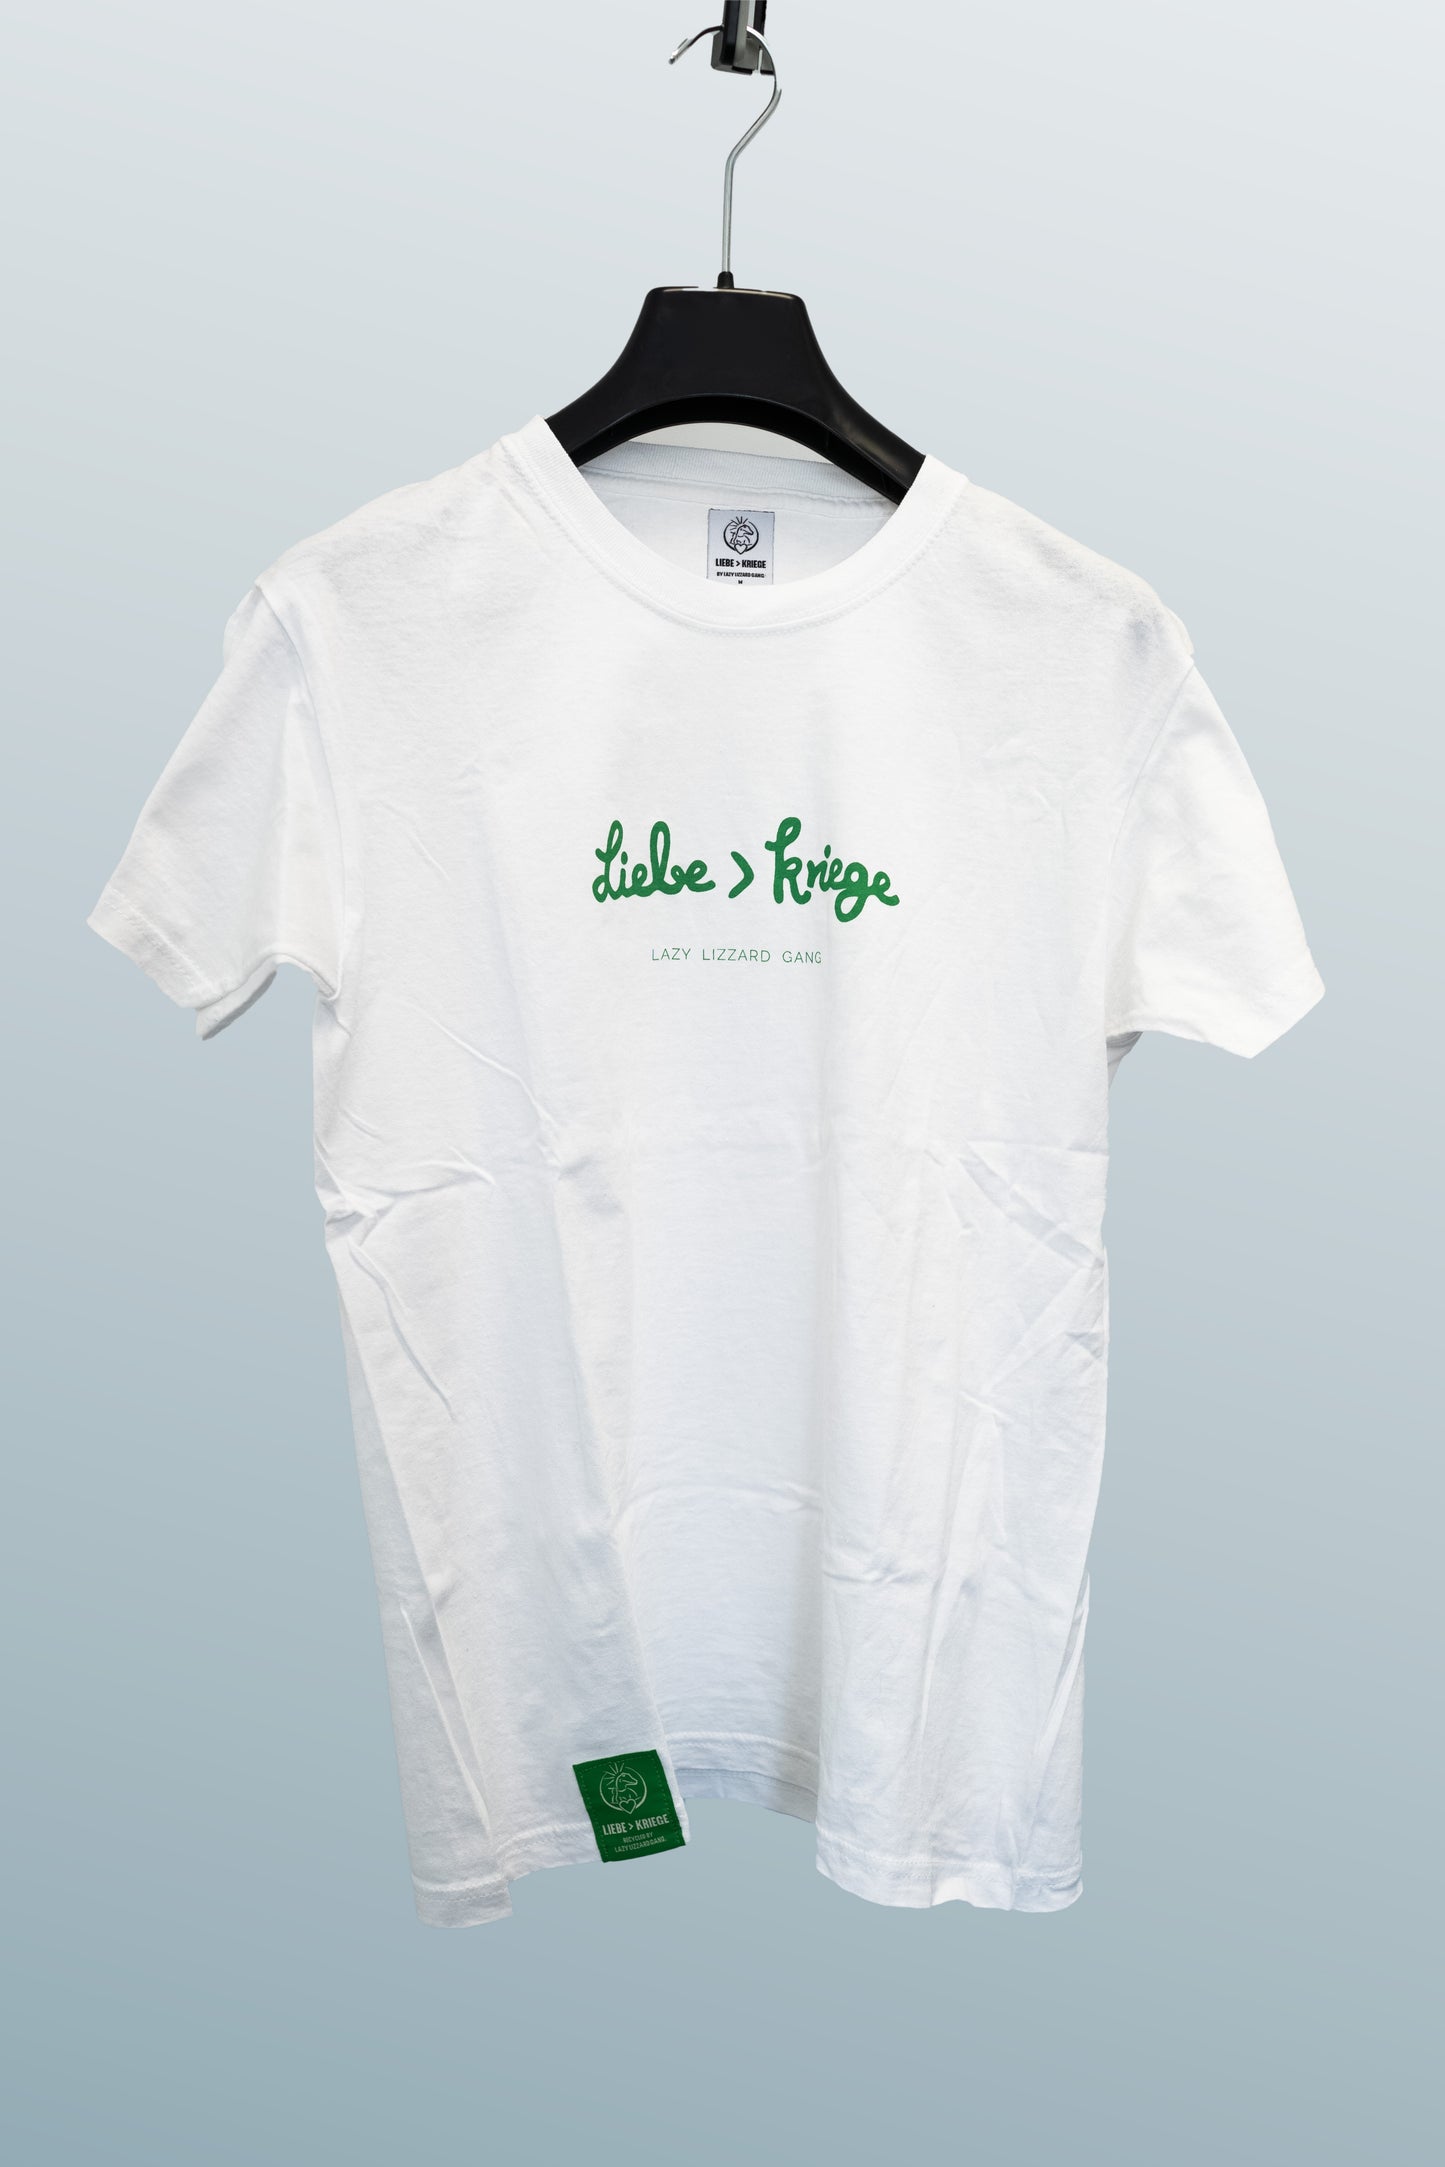 Lazy Lizzard Gang Liebe > Kriege Shirt